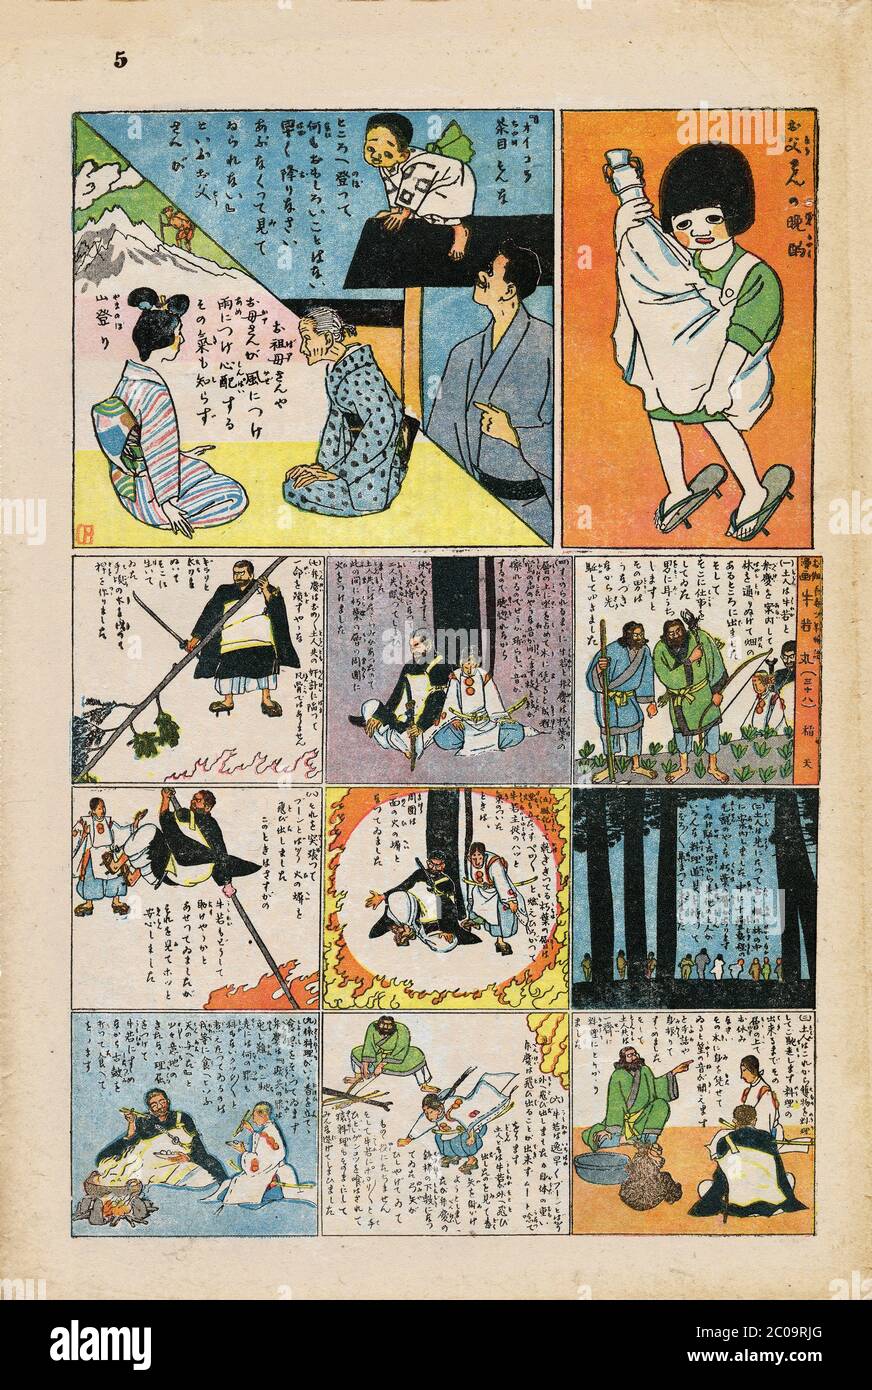 1920s Japan - Jiji Manga Comics 267 ] — Jiji Manga (時事漫画), a comics  supplement developed by famed Japanese artist Kitazawa Rakuten (北澤 保次,  1876–1955), often called the 'father of manga'.